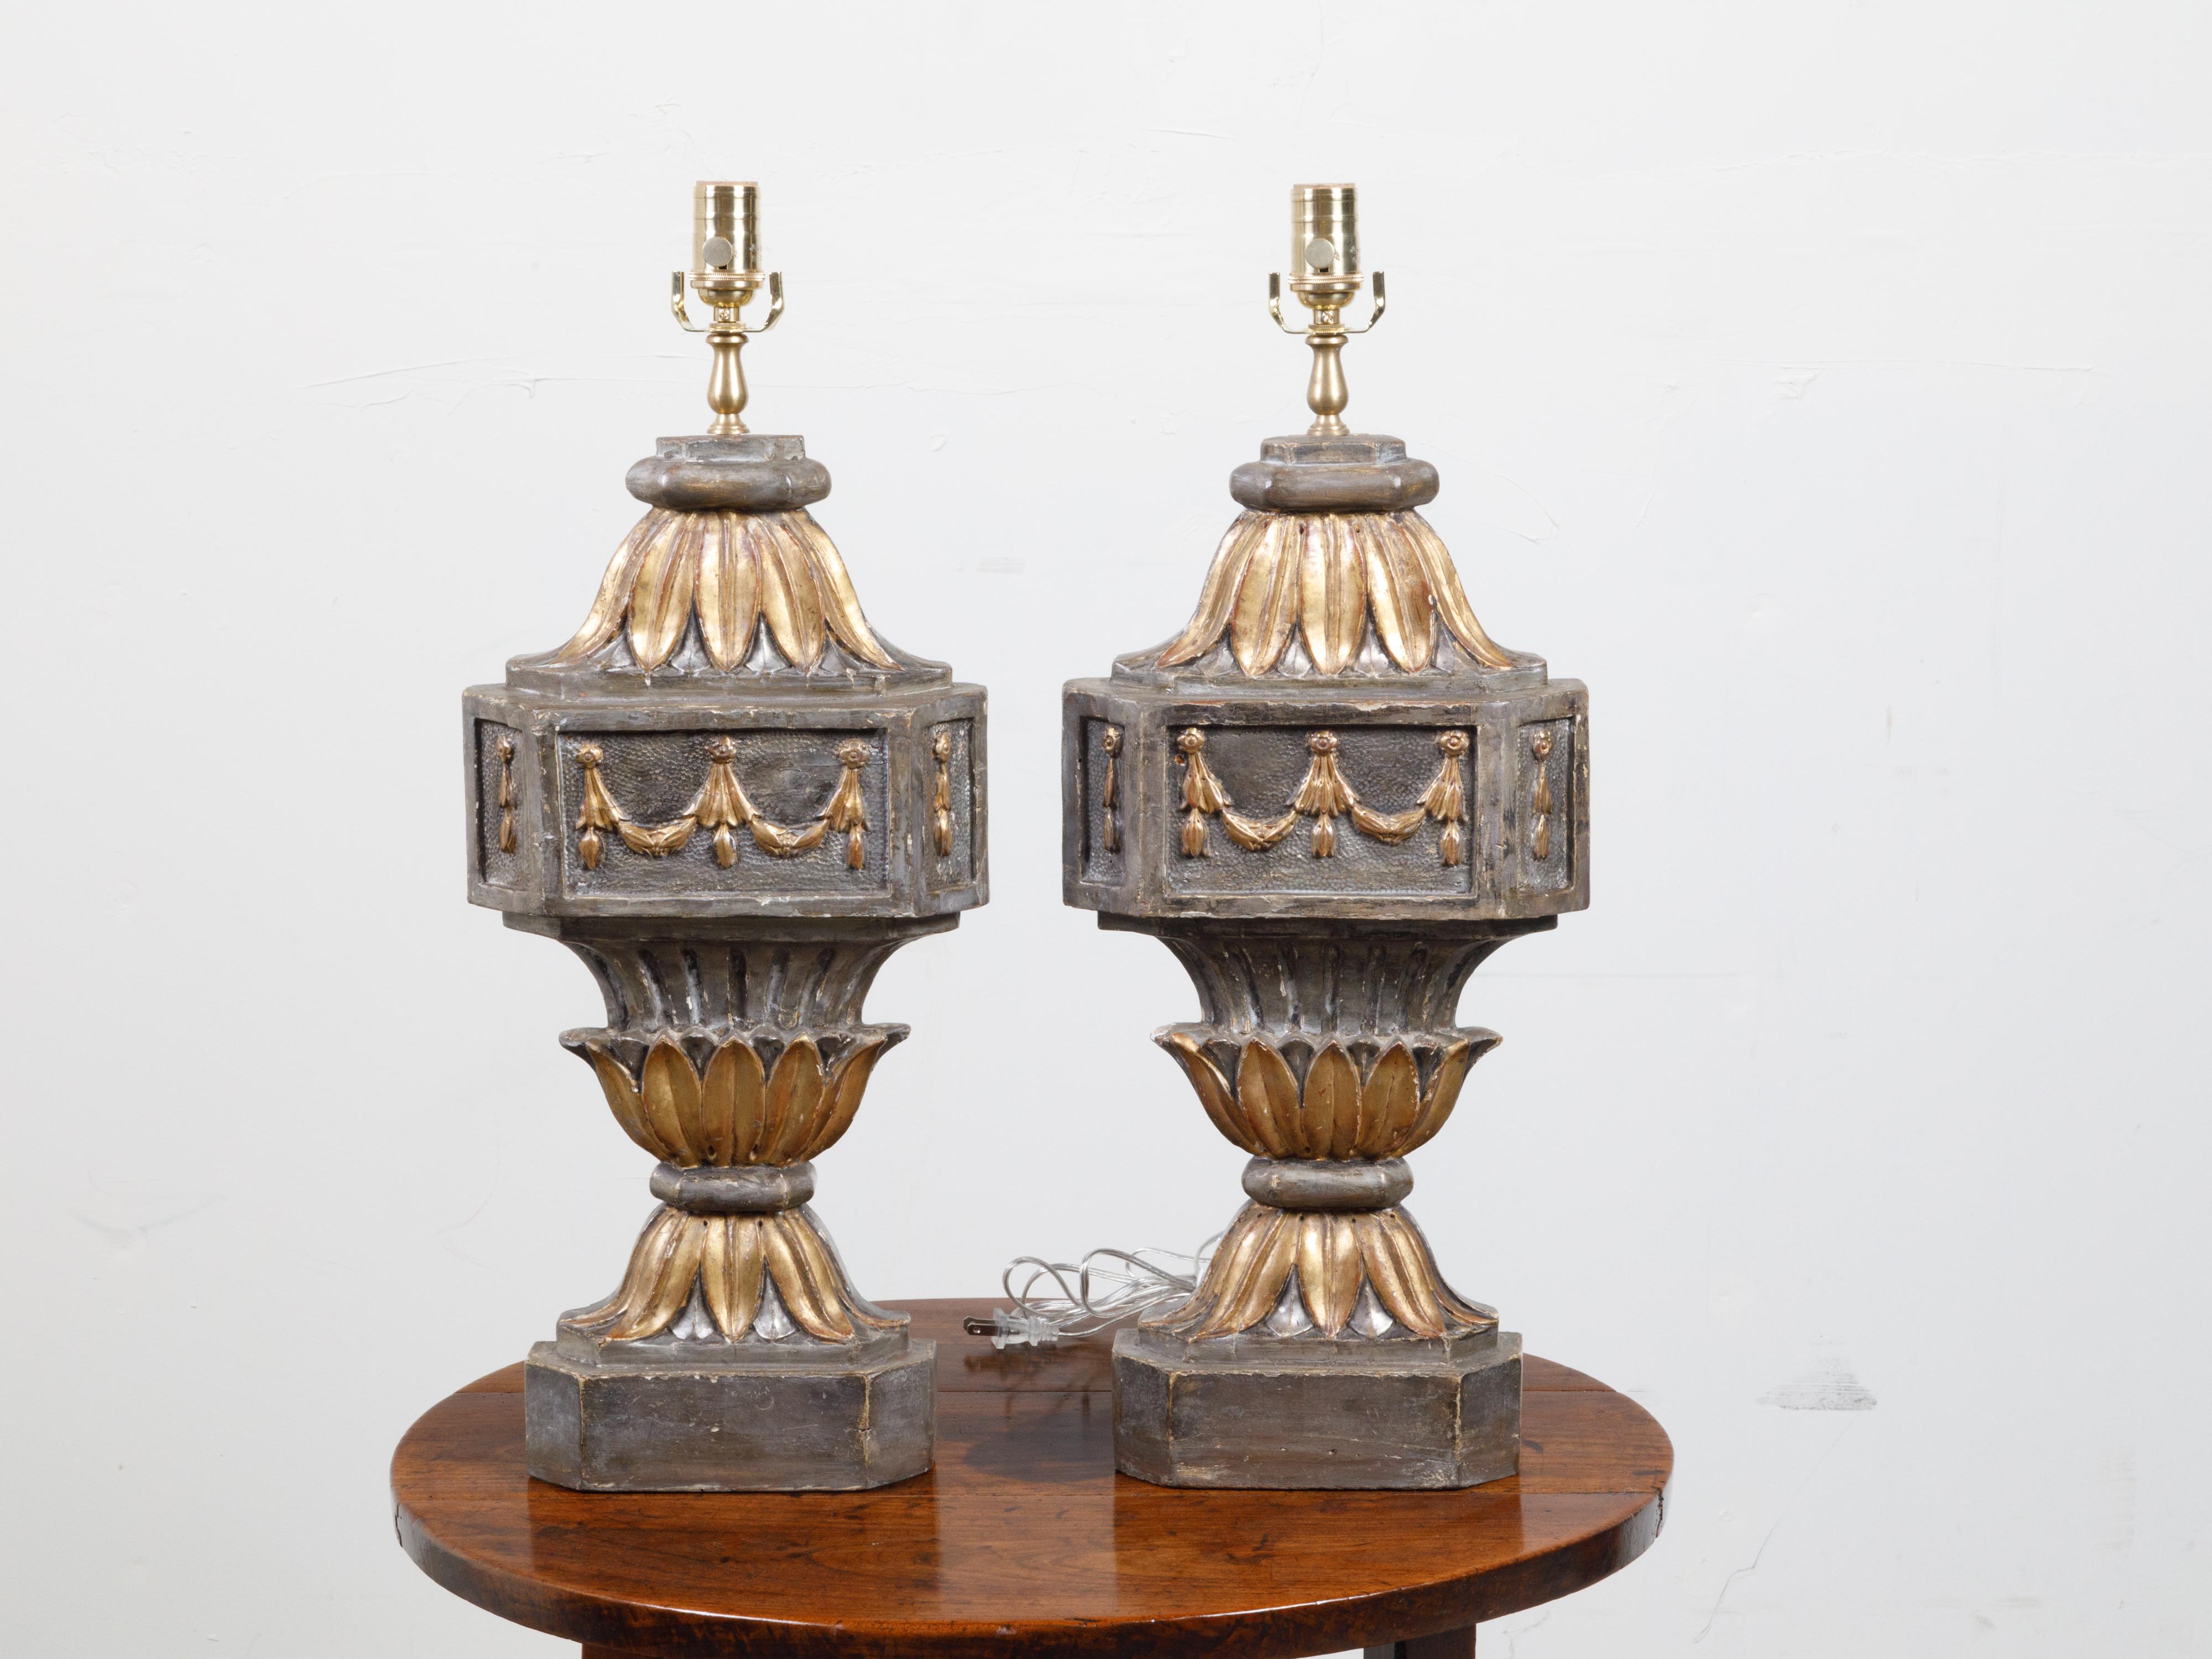 Zwei geschnitzte und vergoldete französische Holzfragmente aus dem 18. Jahrhundert, die zu Tischlampen verarbeitet wurden. Dieses Paar architektonischer Fragmente, das im 18. Jahrhundert in Frankreich entstand, wurde in eine für die USA verdrahtete